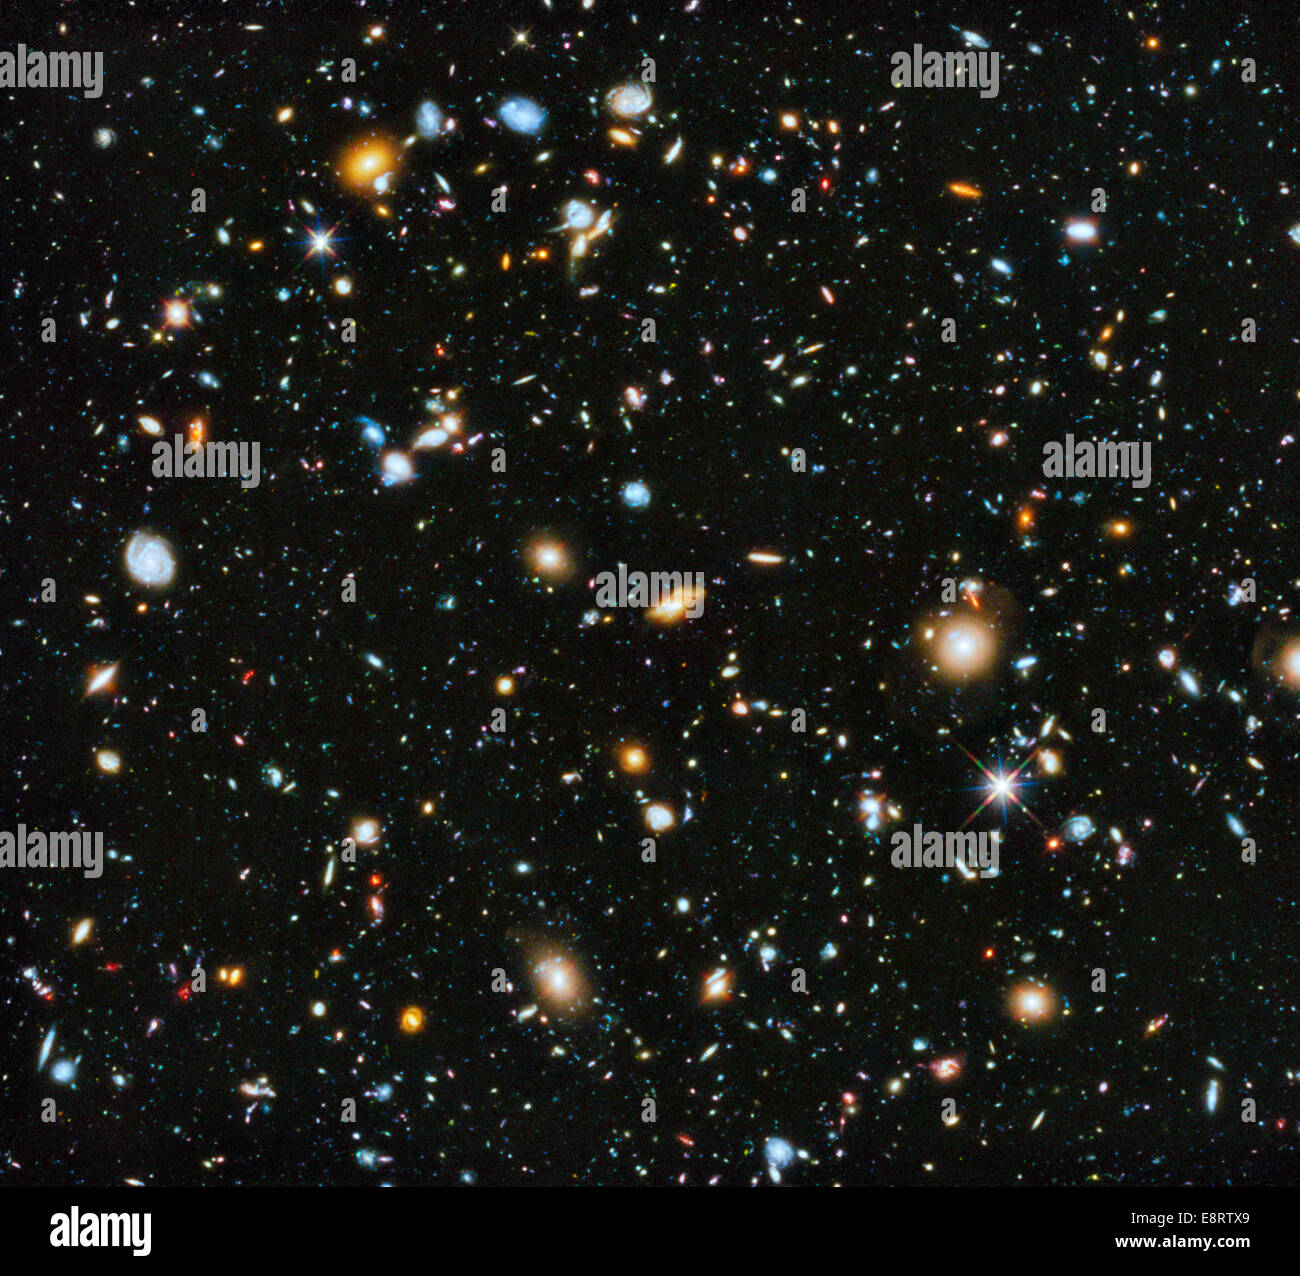 Astronomes utilisant le télescope Hubble de la NASA ont réuni une image complète de l'évolution de l'univers - parmi les plus Banque D'Images